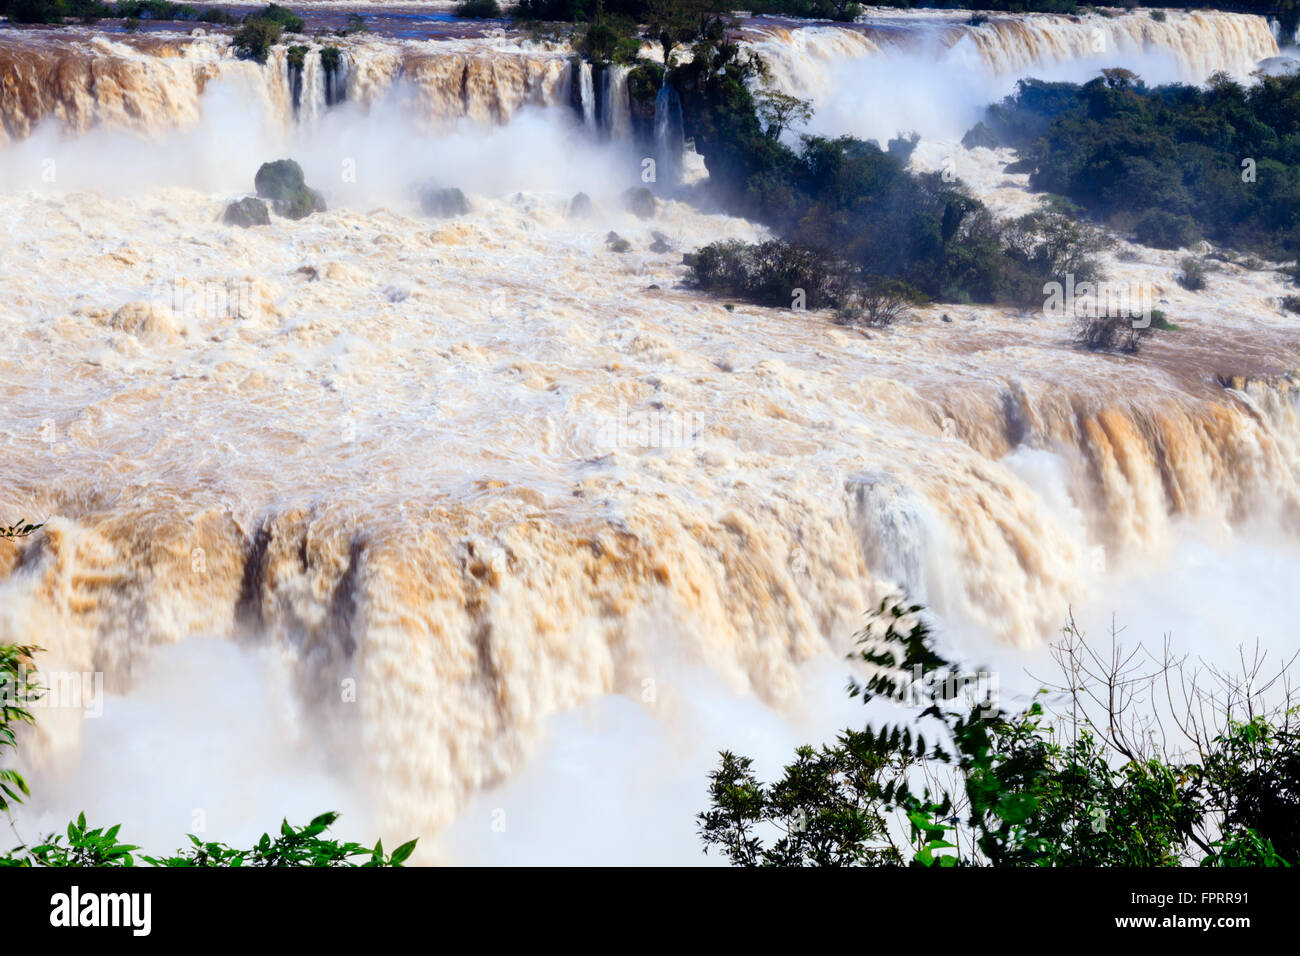 Cataratas del Iguazú en la frontera de Brasil y Argentina, Sudamérica Foto de stock